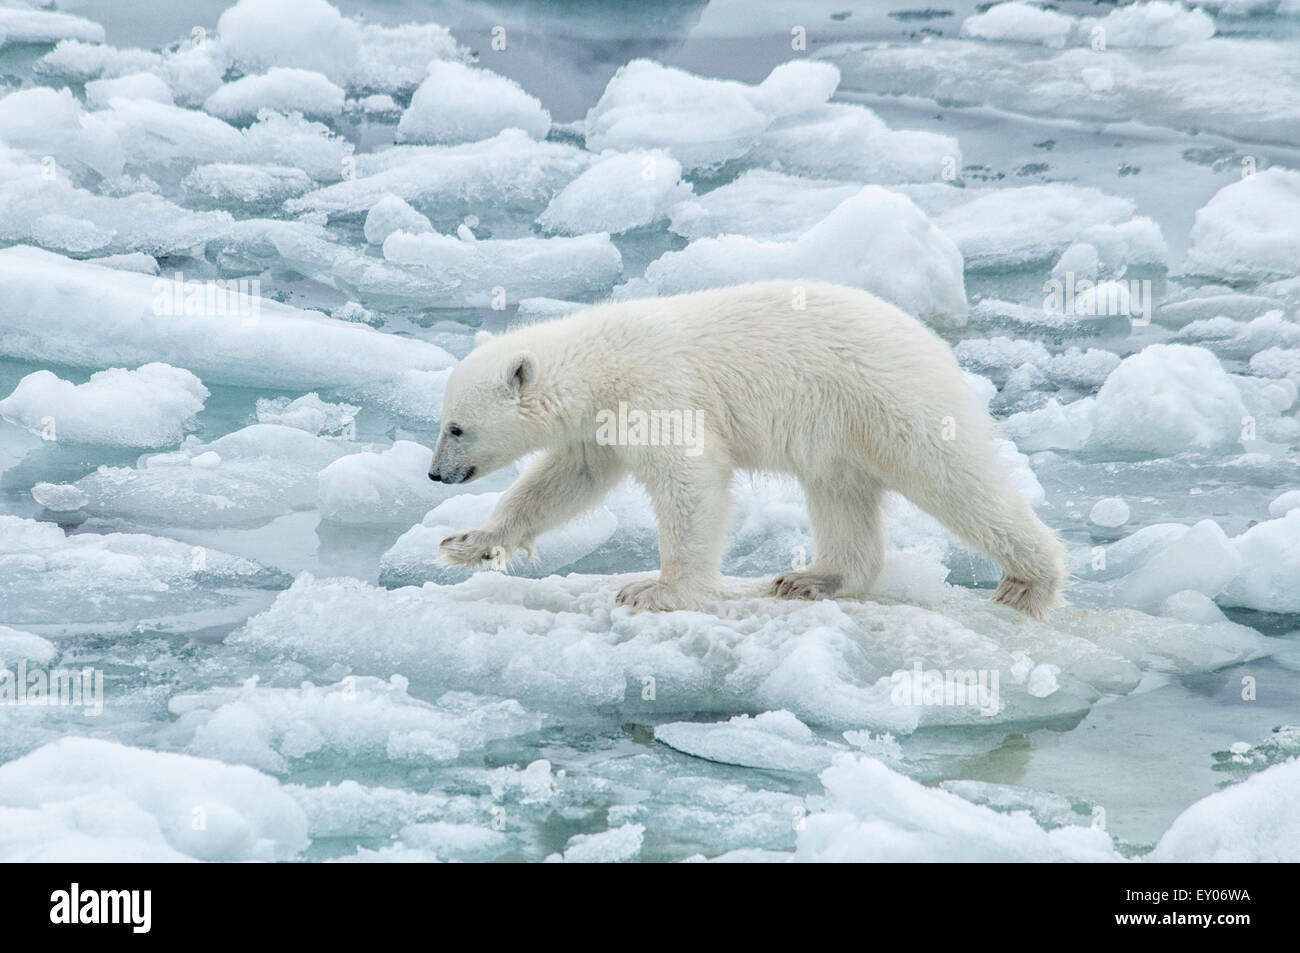 Carino Polar Bear Cub, Ursus maritimus, camminando con attenzione sulla fusione Olgastretet Pack ghiaccio, arcipelago delle Svalbard, Norvegia Foto Stock